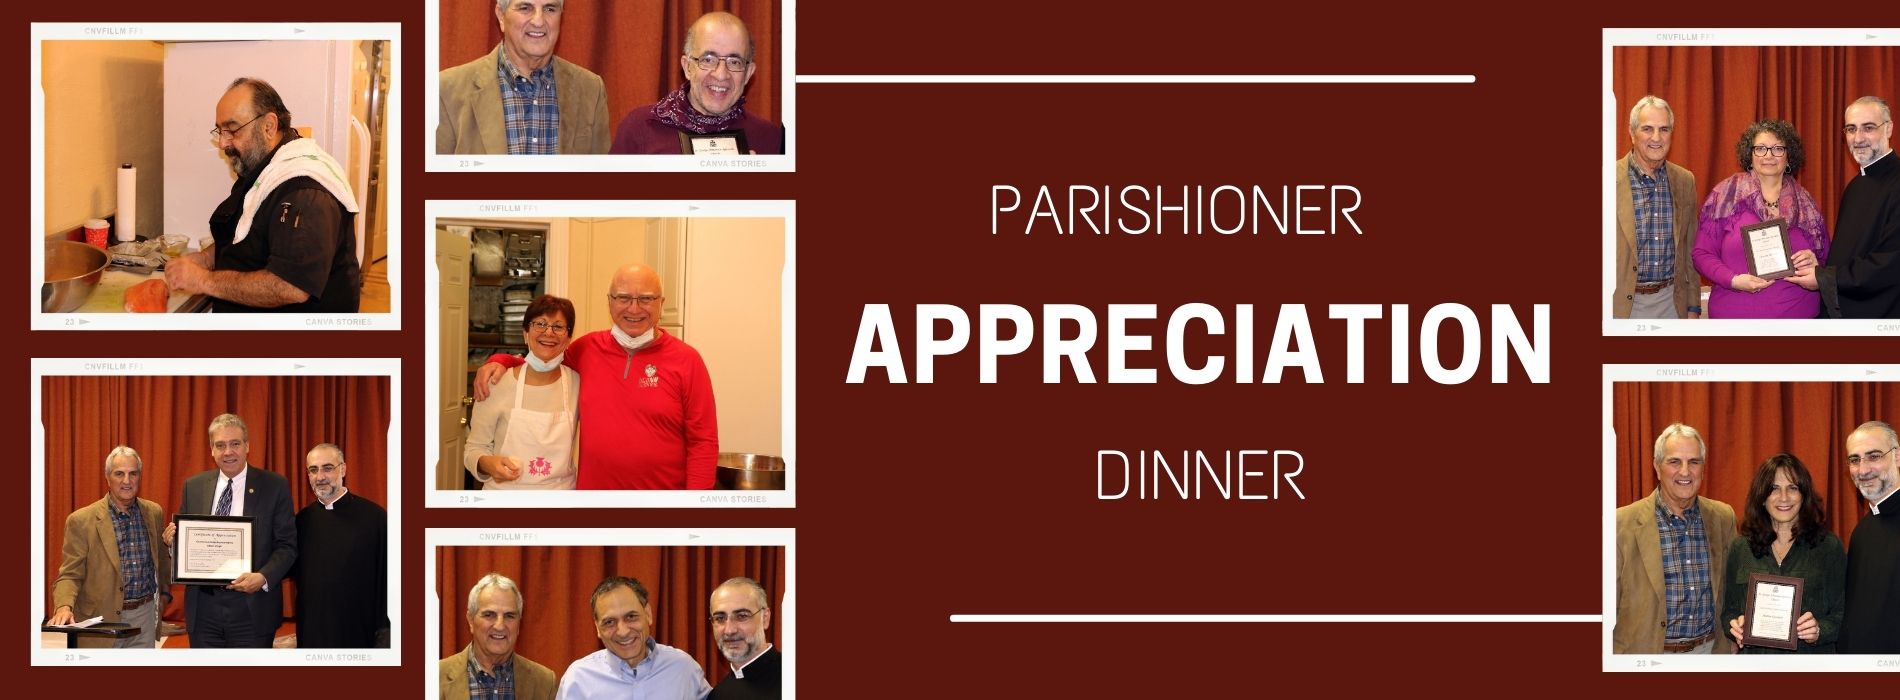 Parishioner Appreciation Dinner